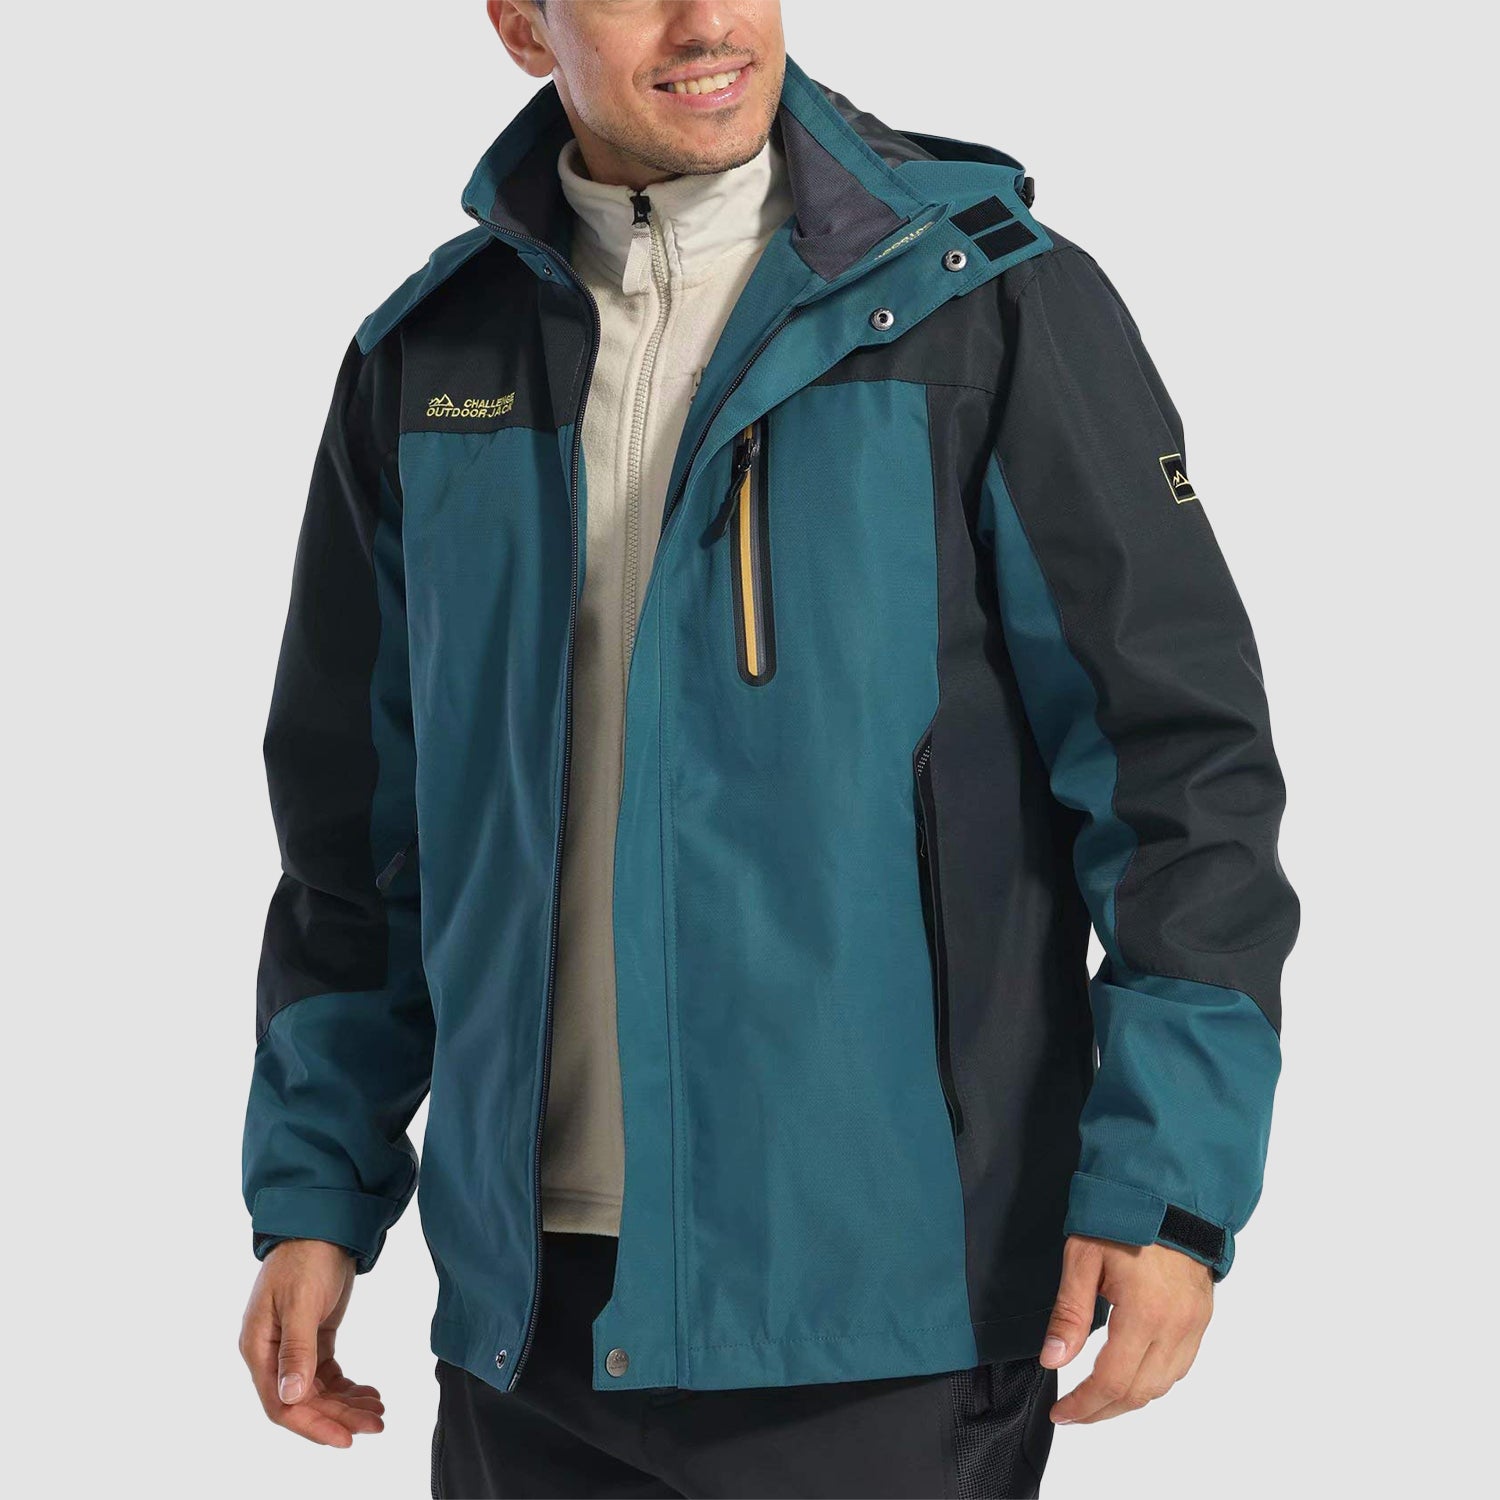 MAGCOMSEN Men's Outdoor Jacket 4 Pockets Hooded Windproof Jacket Waterproof  Rain